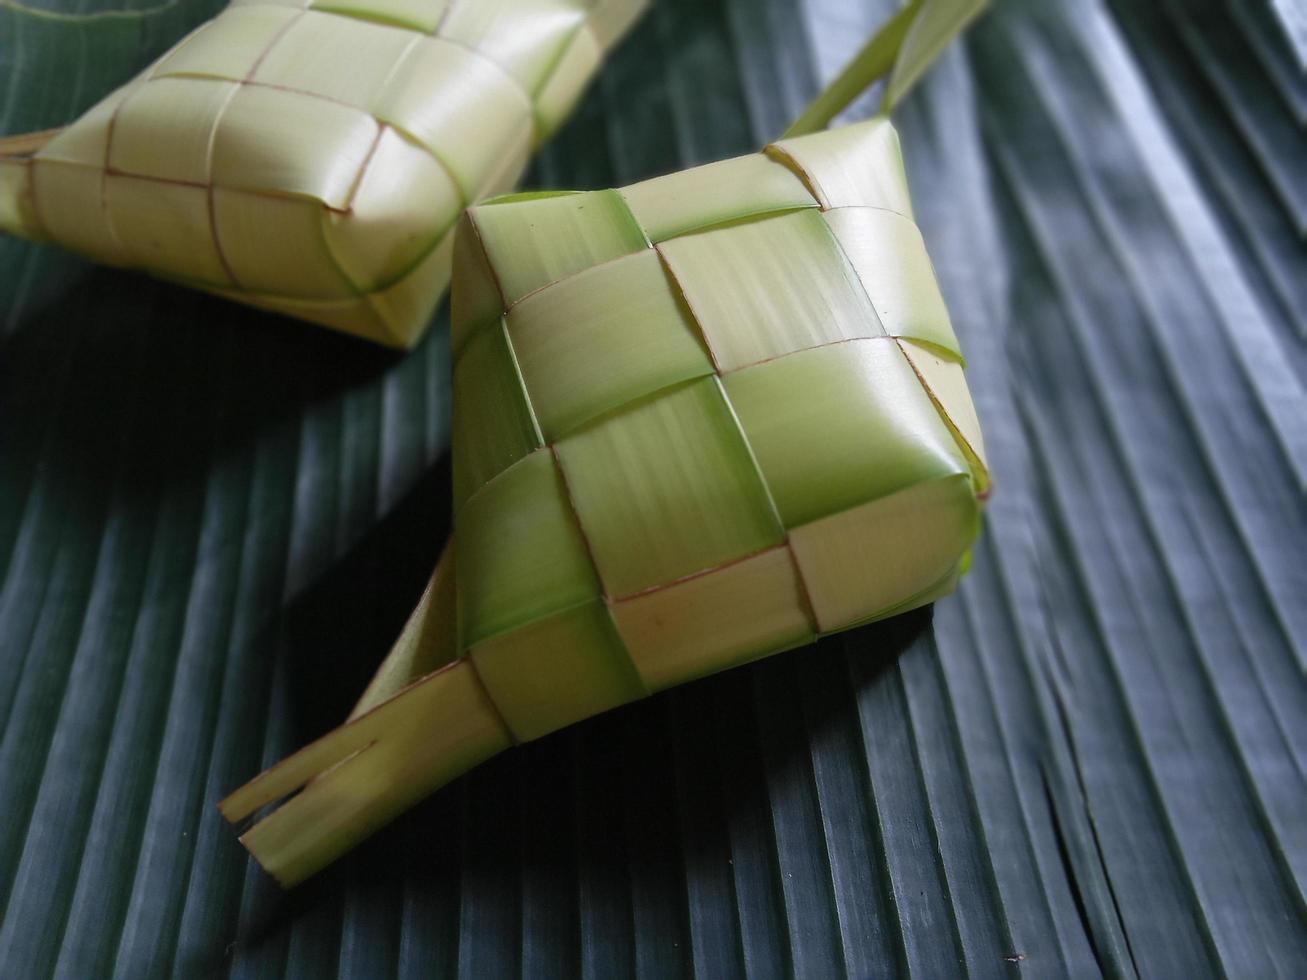 ketupat o bola de masa de arroz es un manjar local durante la temporada festiva. ketupats, una cubierta de arroz natural hecha de hojas de coco jóvenes para cocinar arroz aislado en un fondo blanco foto